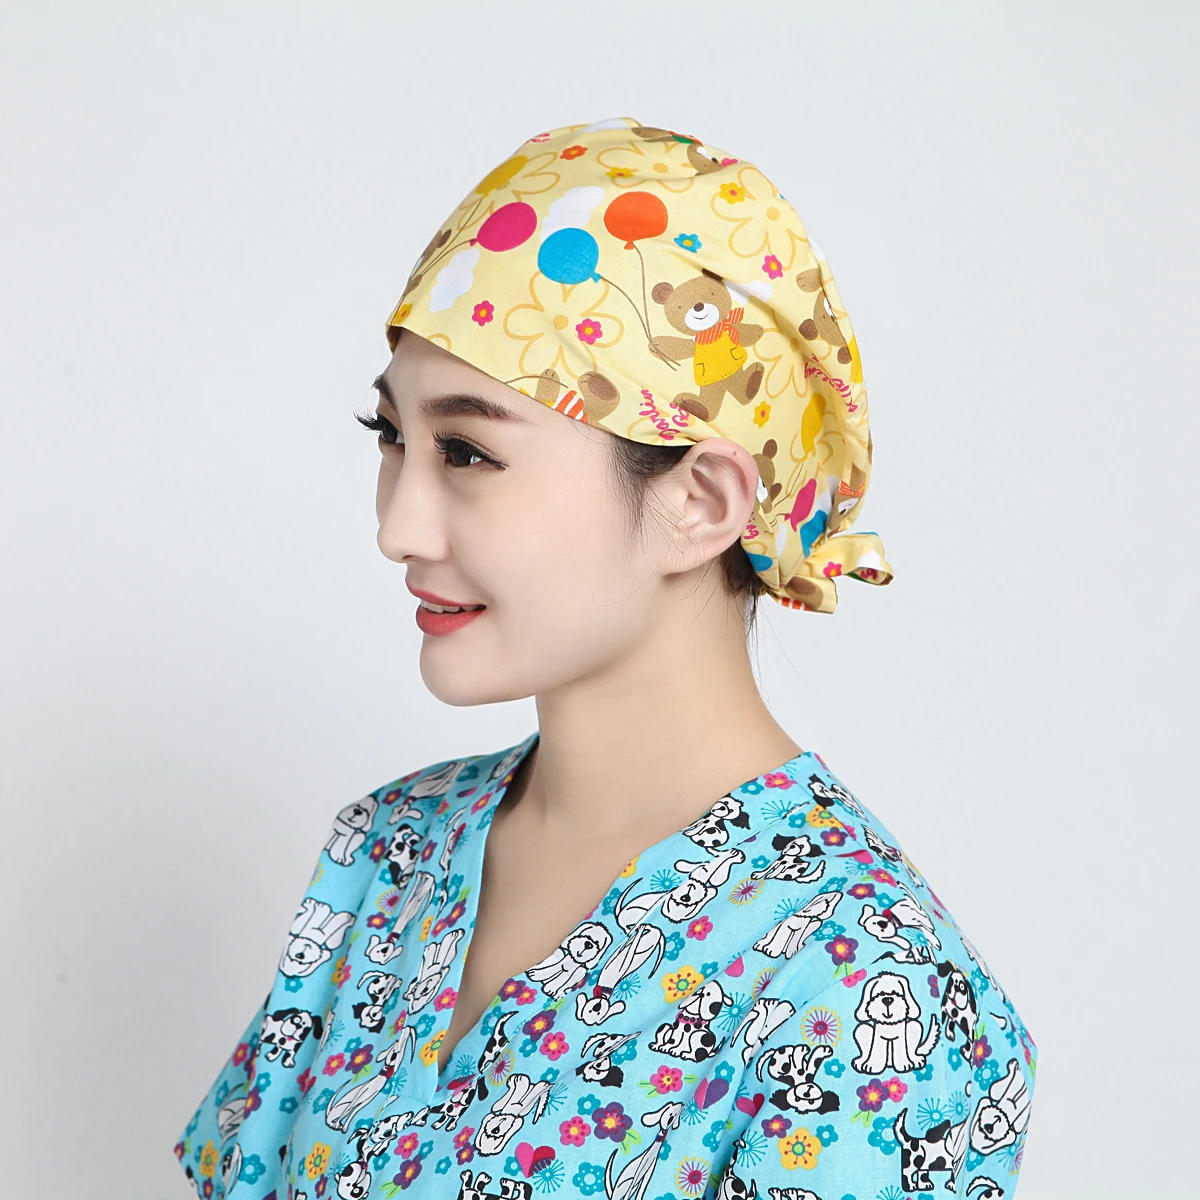 Pet Shop Хирургический Скраб Кепка для женщин регулируемые медицинские больничные шапочки скраб лабораторная шапка медсестры шапочка для операционной доктора шапочка медсестры